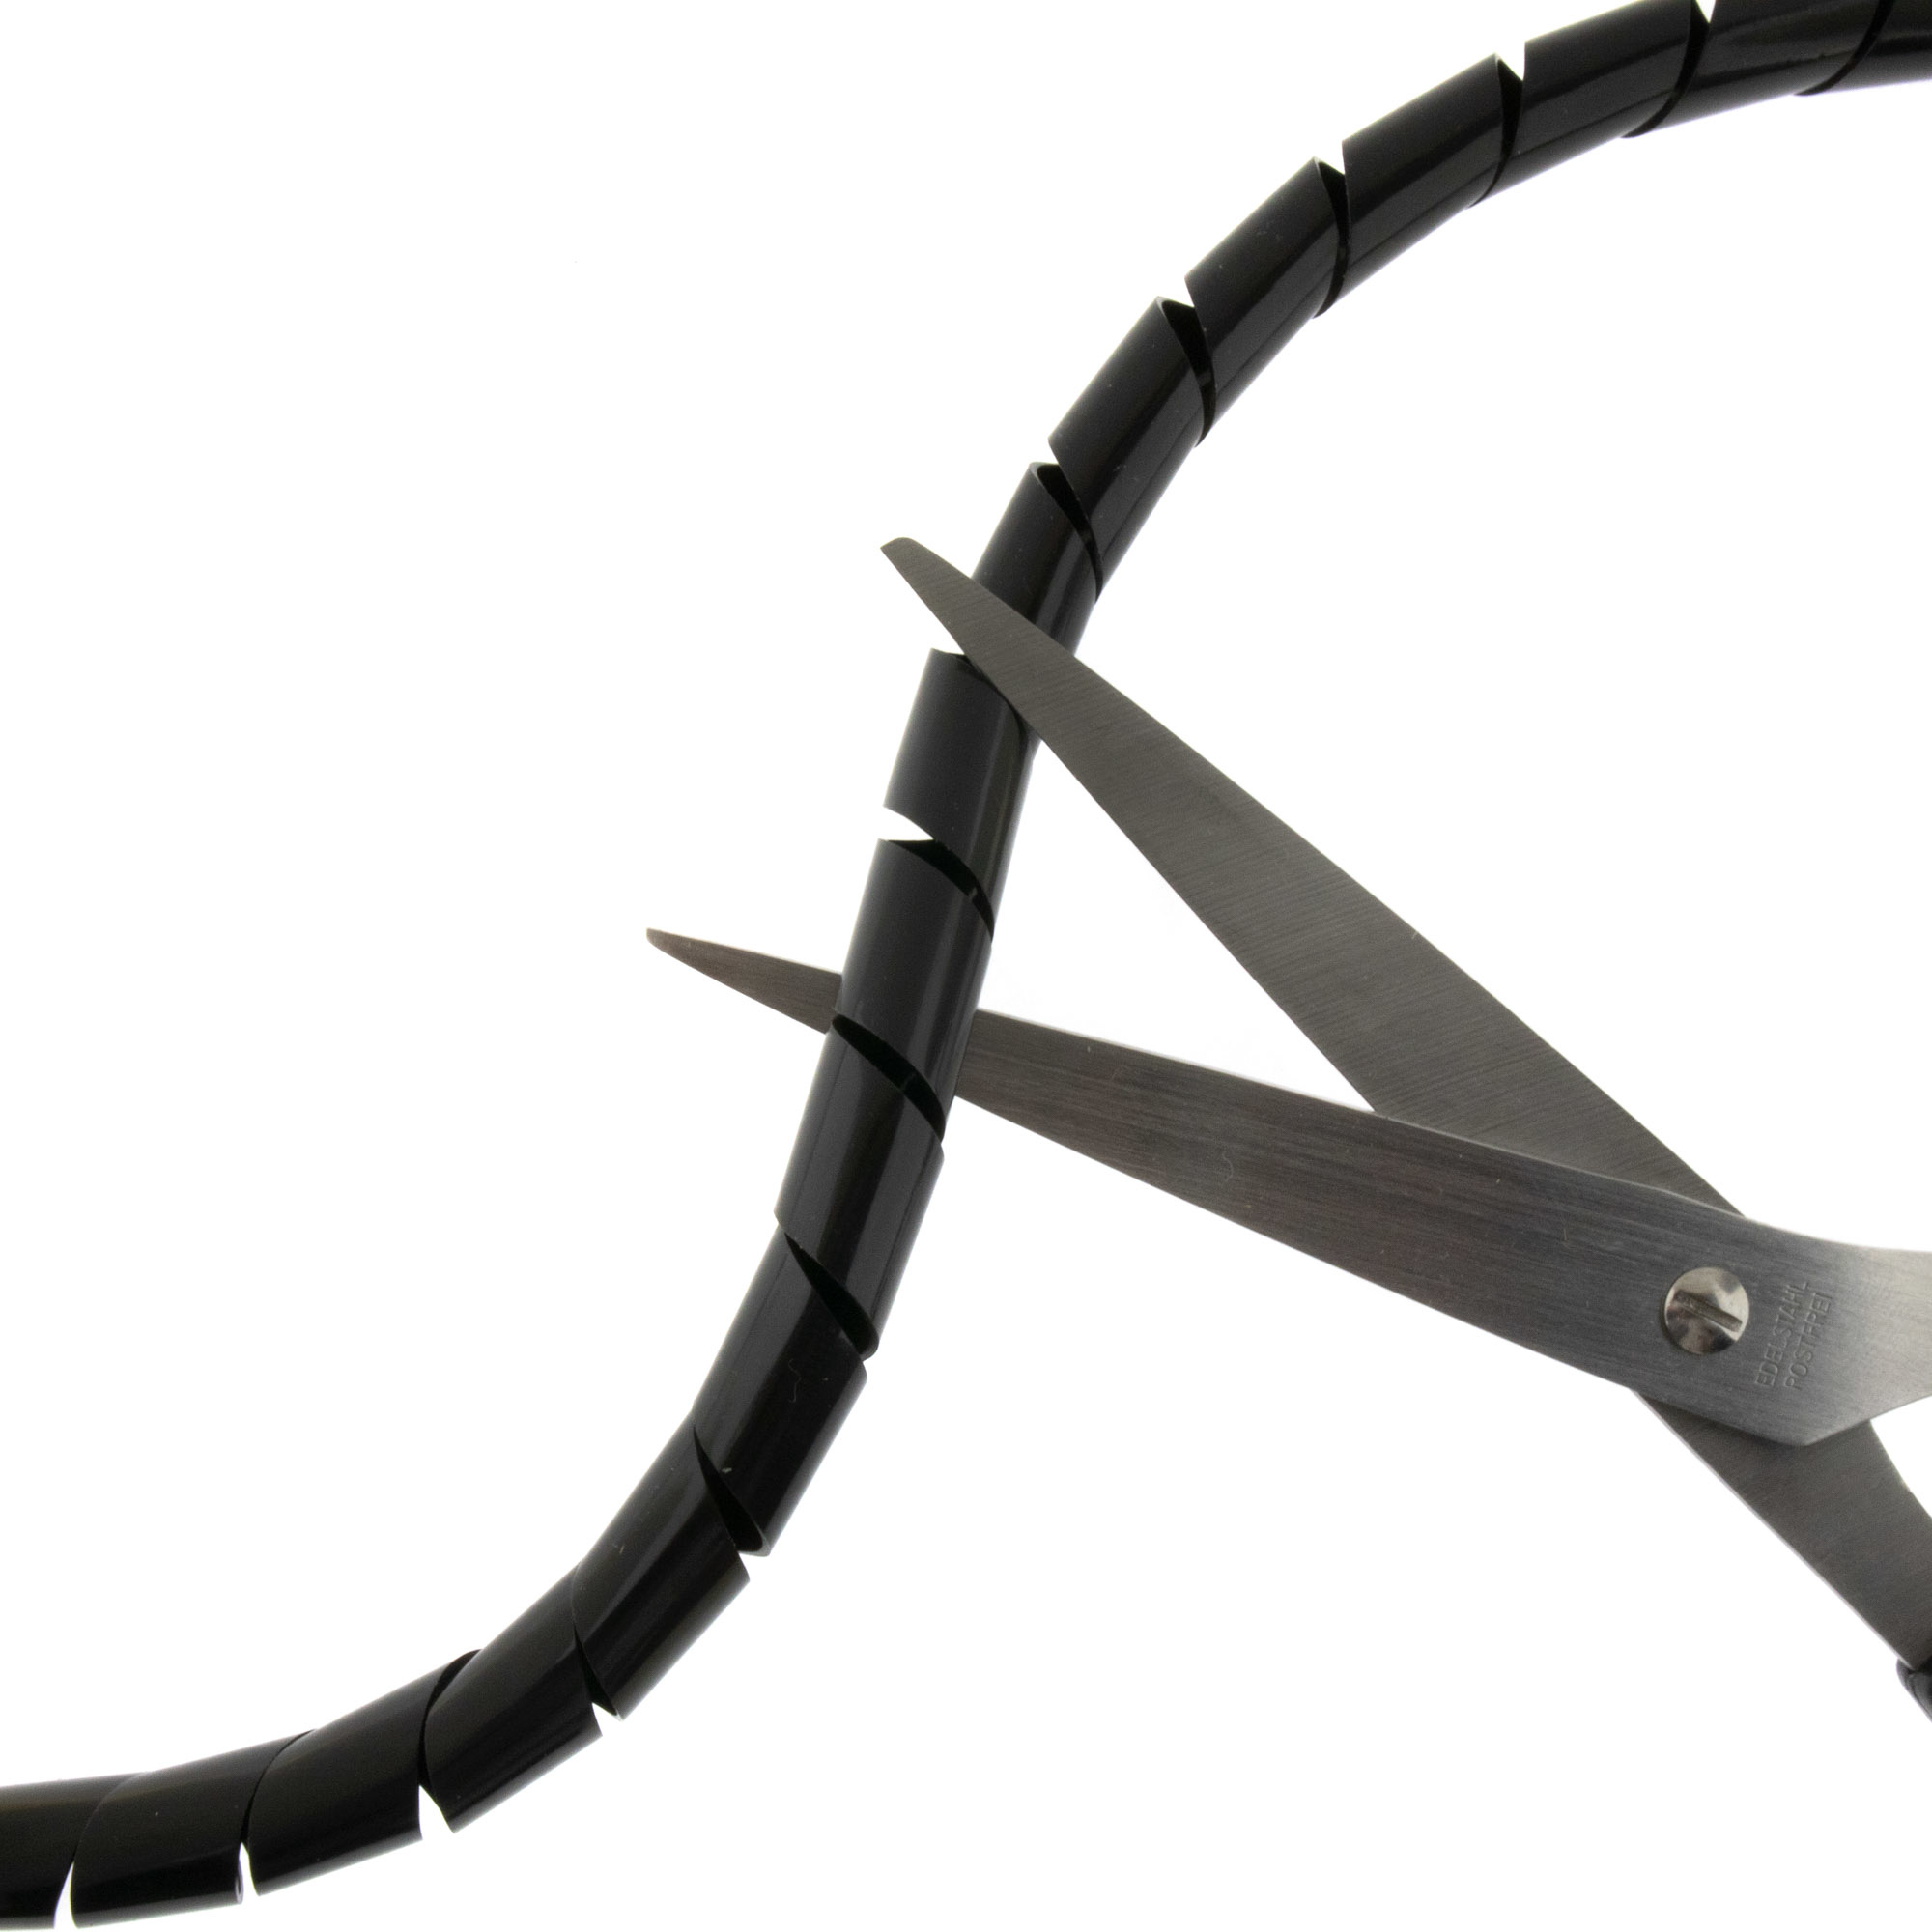 Spiralband 6-60mm, schwarz, 10 Meter